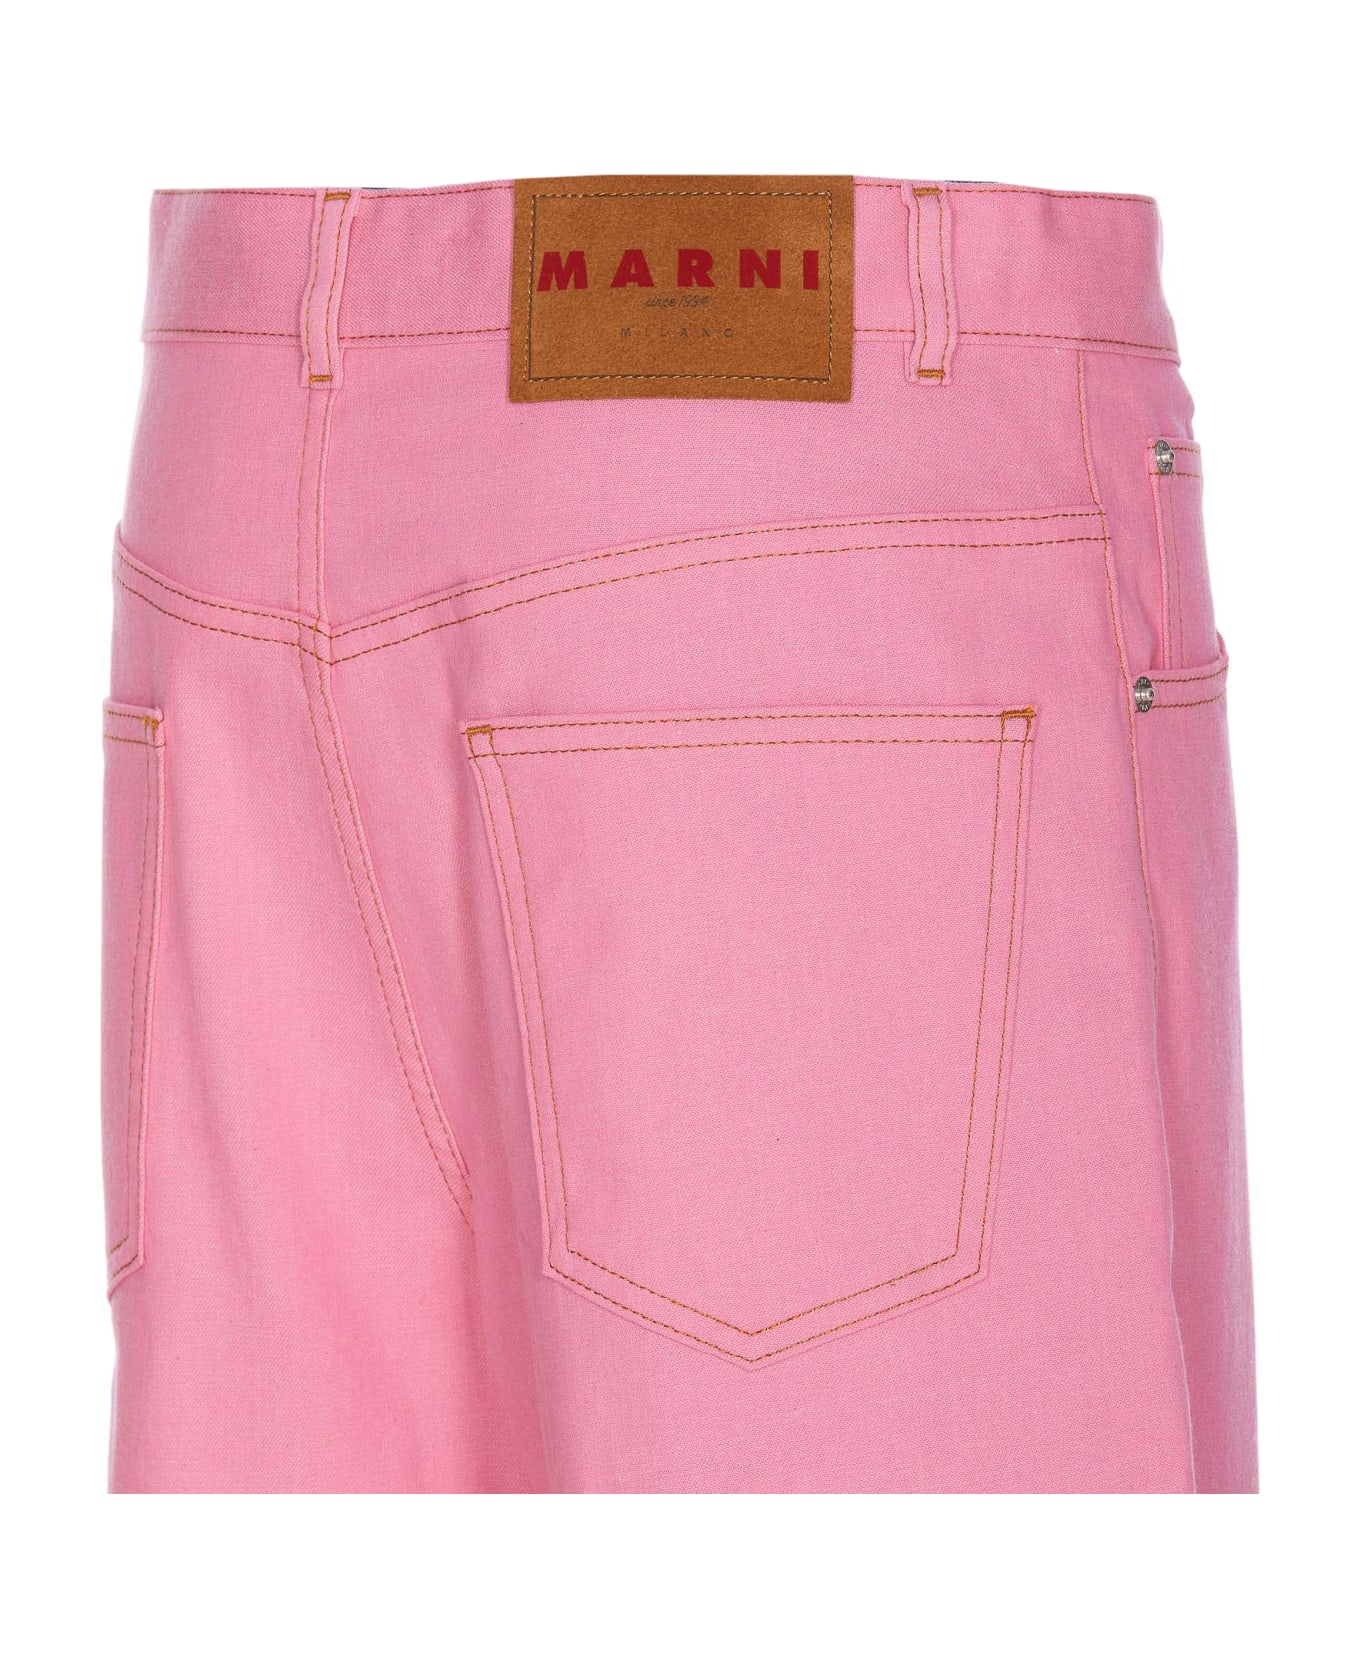 Marni Pants - Pink ボトムス